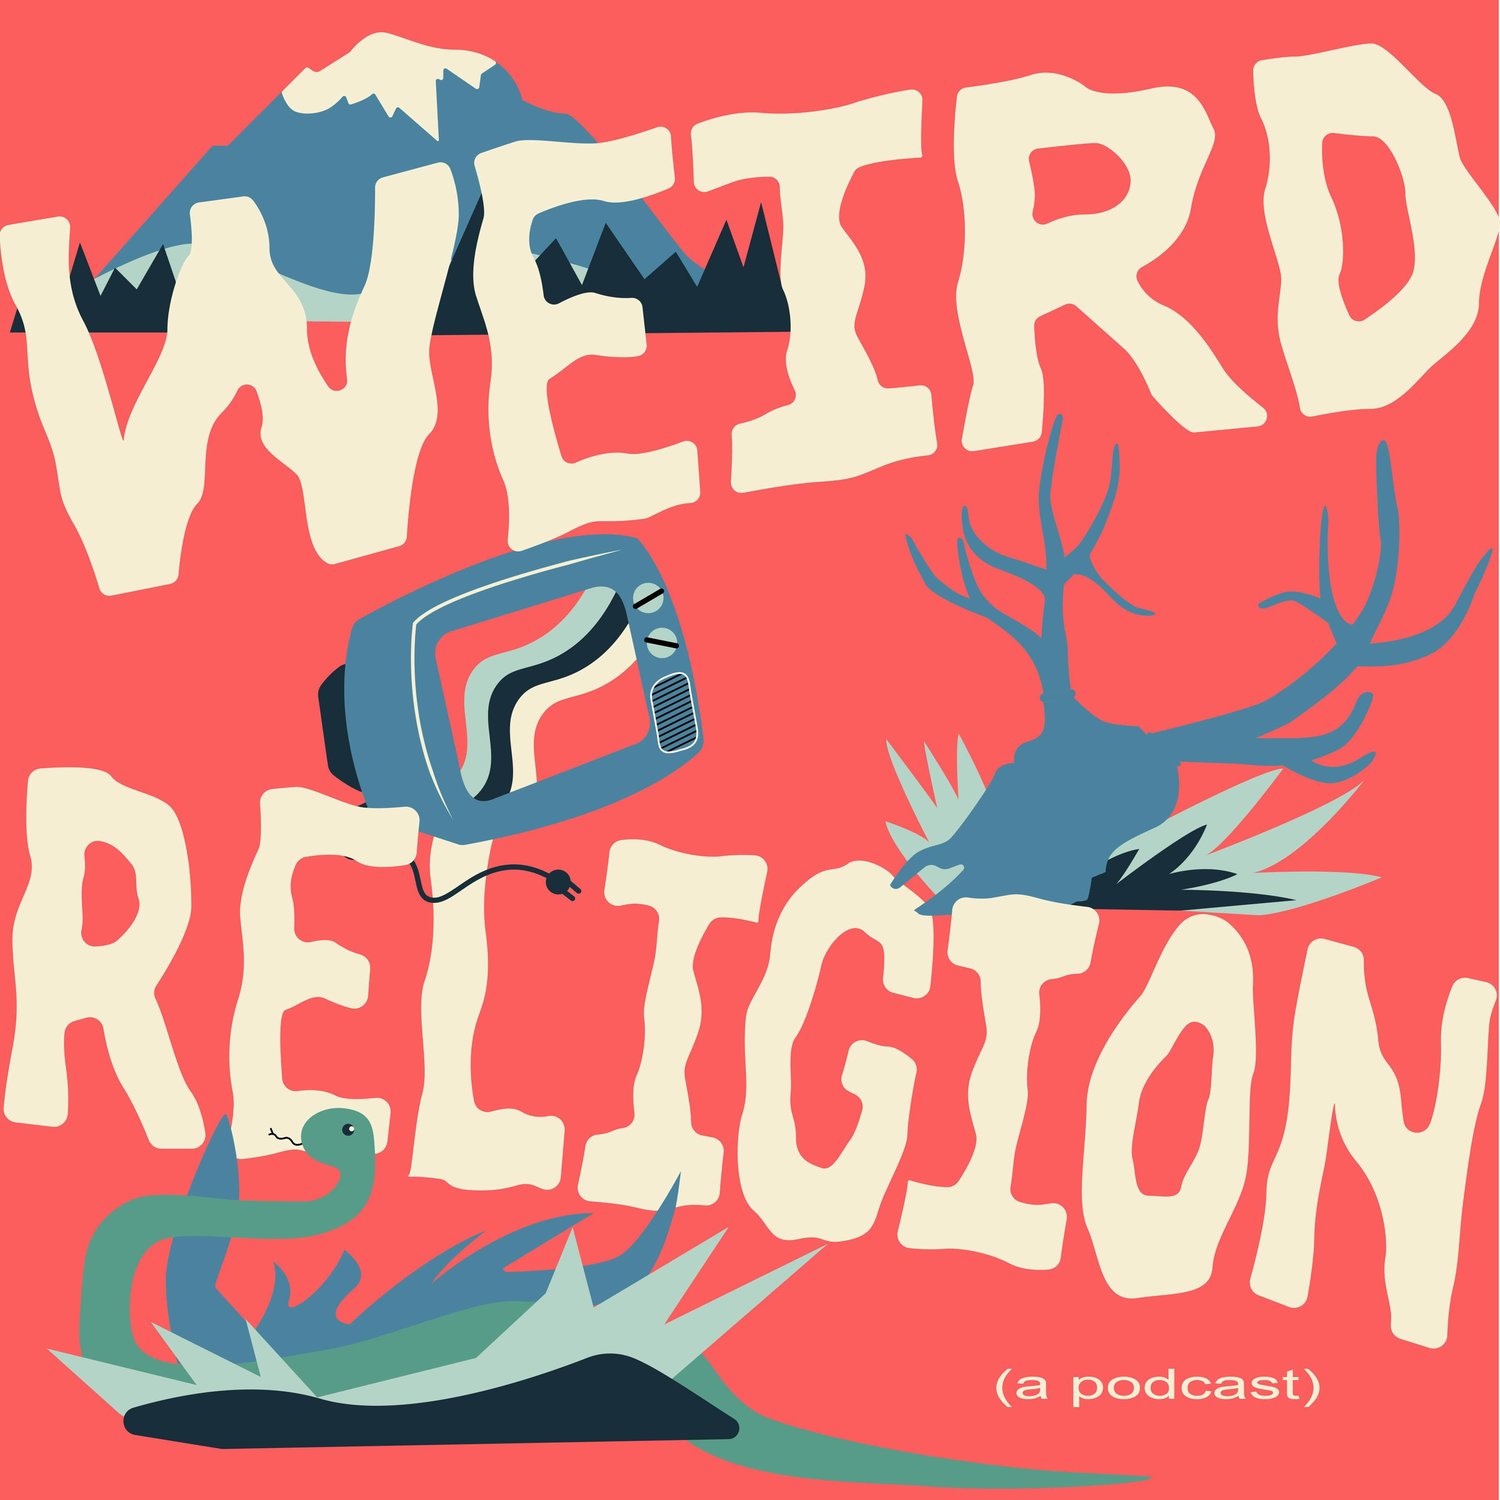 WEIRD+RELIGION+(album+cover)